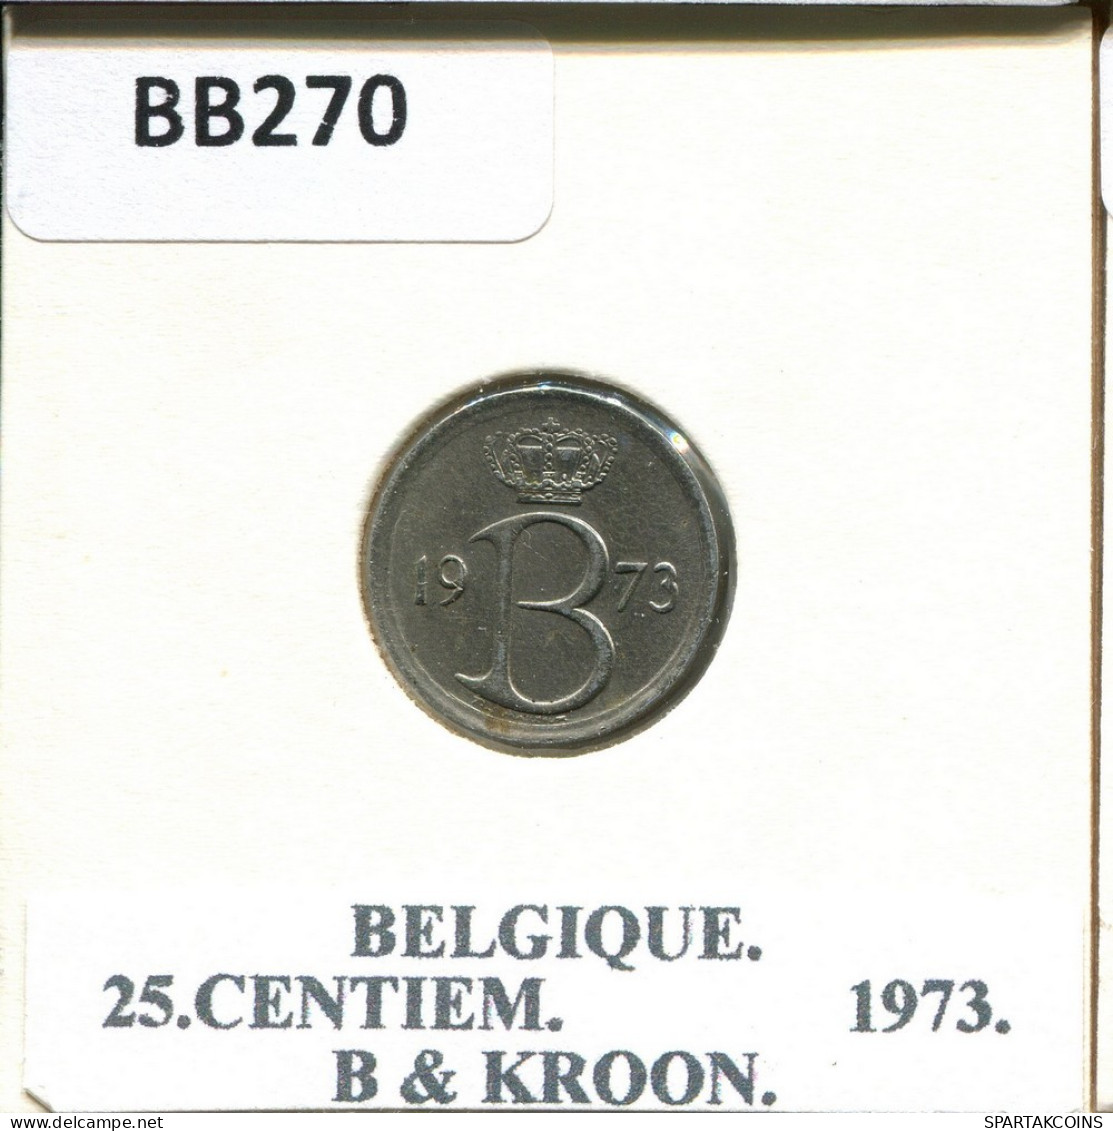 25 CENTIMES 1973 Französisch Text BELGIEN BELGIUM Münze #BB270.D.A - 25 Centimes